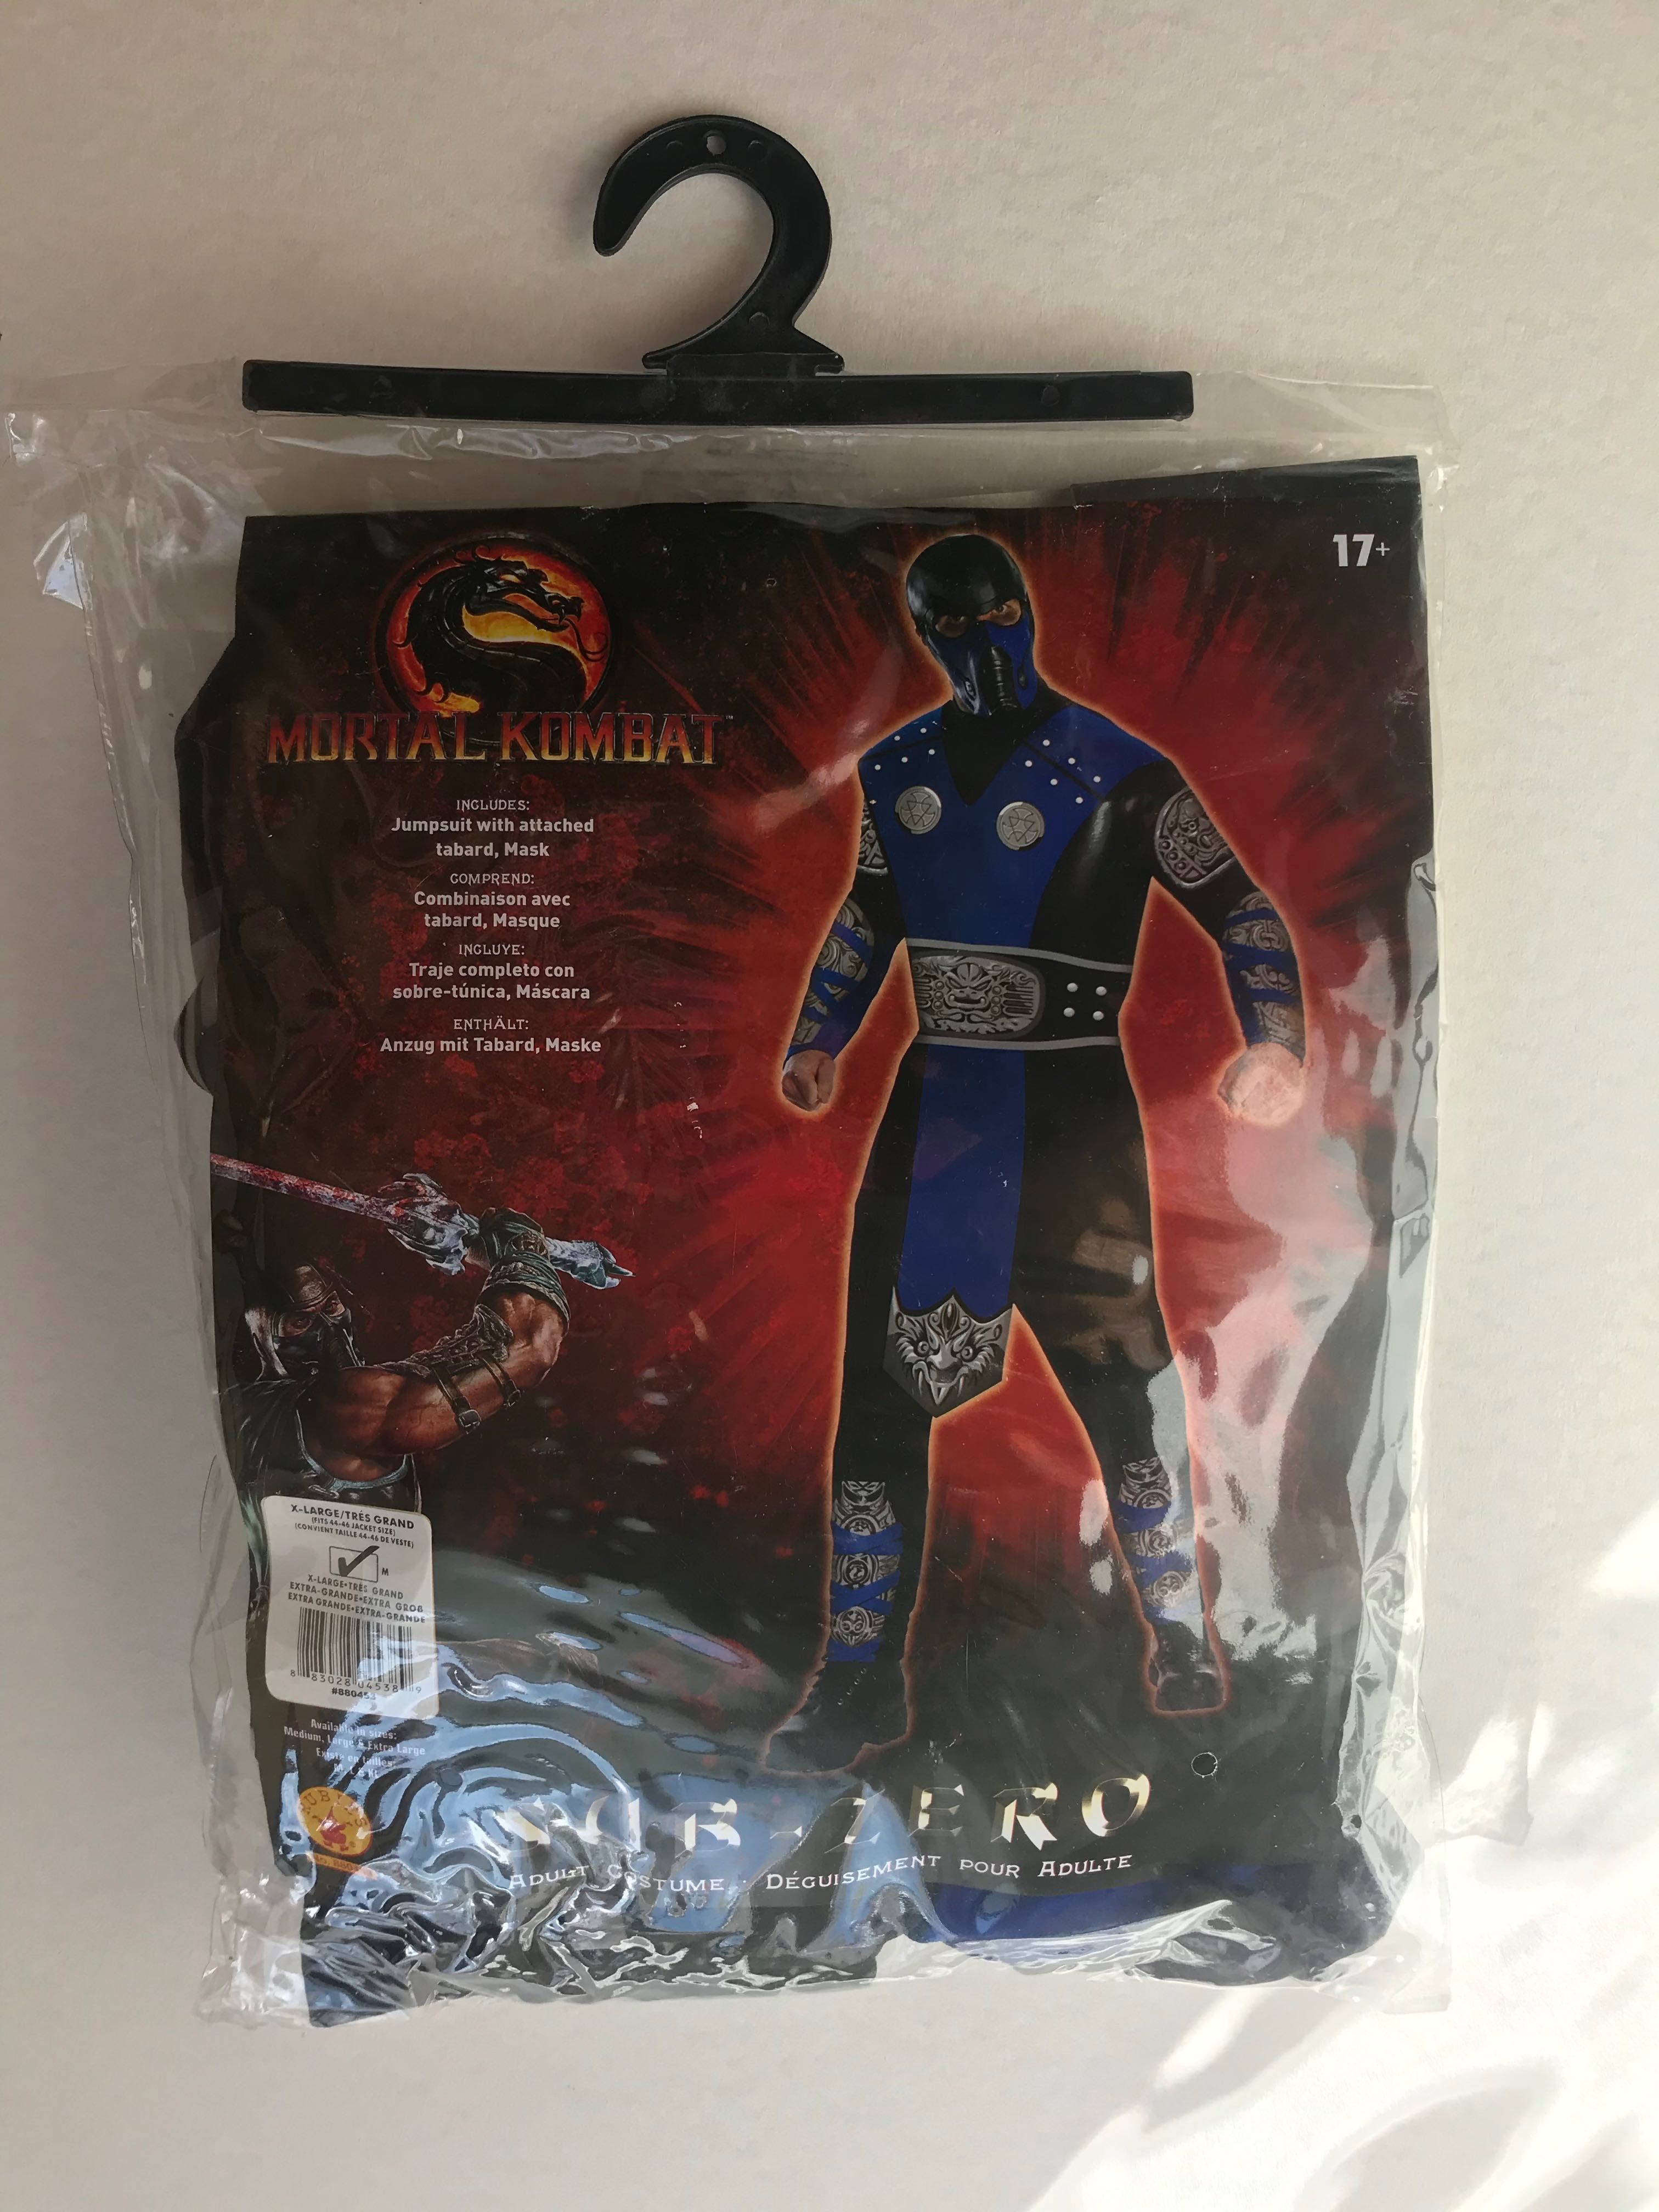 Nowy strój Mortal Kombat - Sub Zero